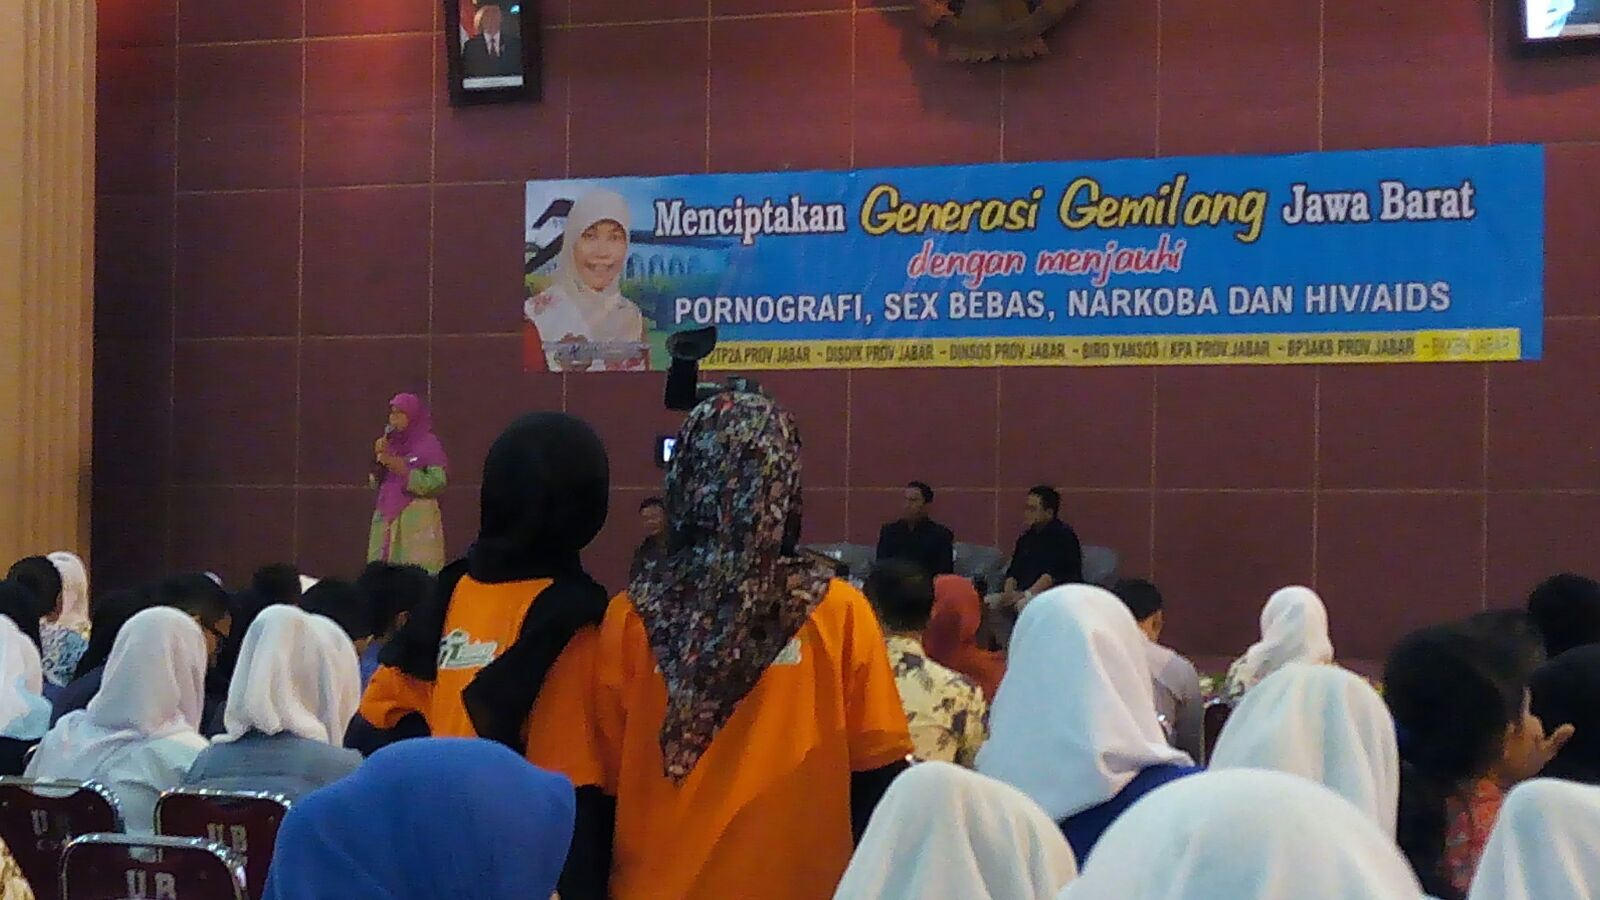 Seminar " Menciptakan Generasi Gemilang Jawa Barat dengan menjauhi Pon...